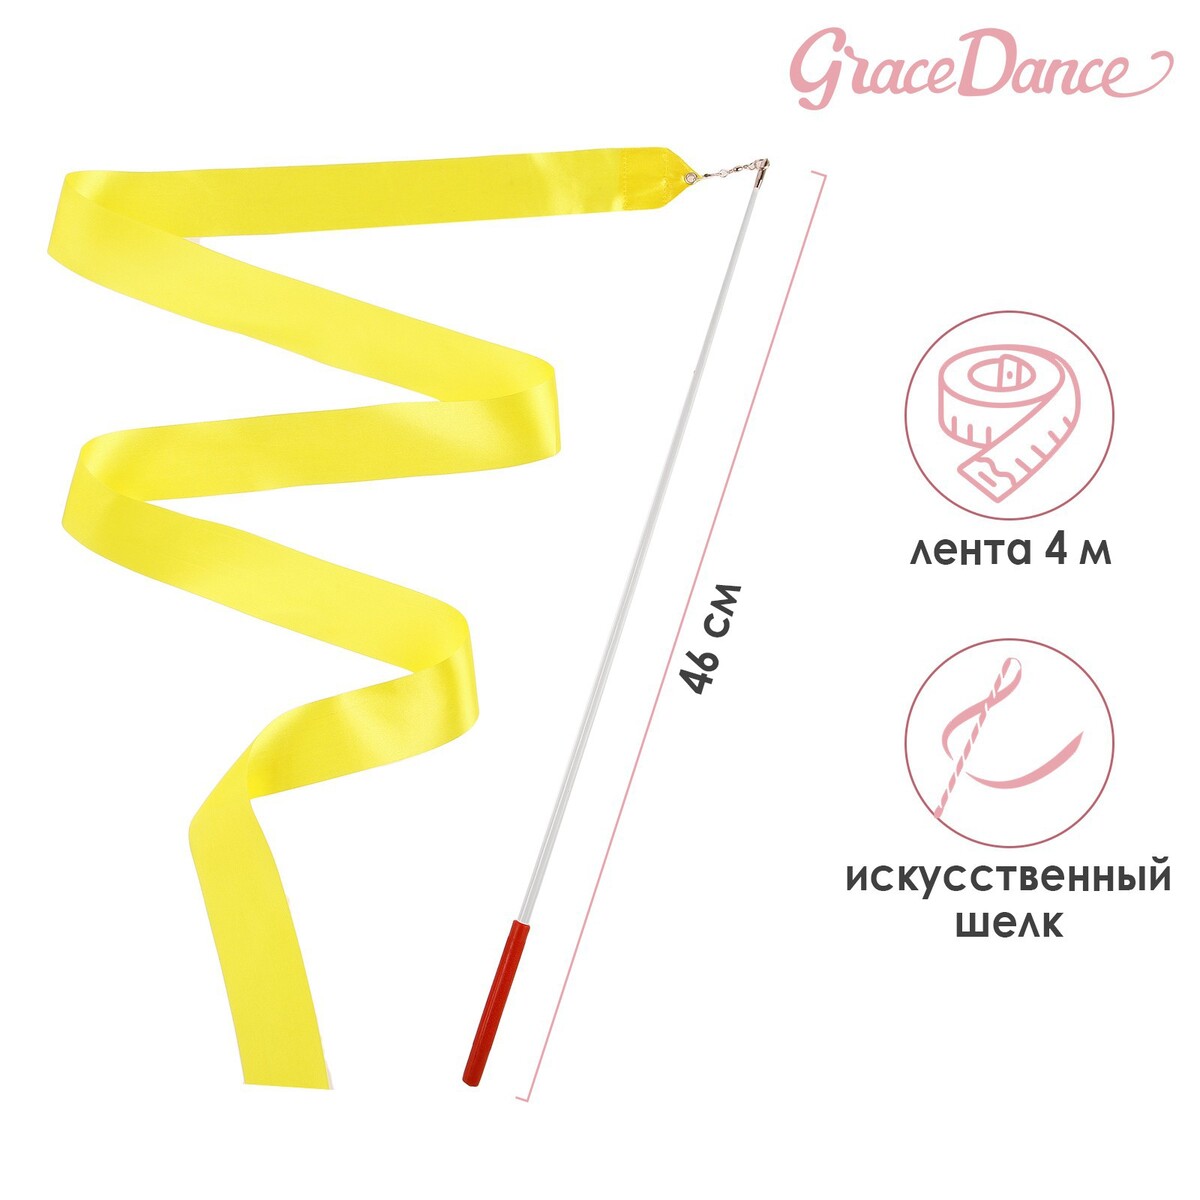 Лента для художественной гимнастики с палочкой grace dance, 4 м, цвет желтый лента для художественной гимнастики с палочкой grace dance 4 м оранжевый